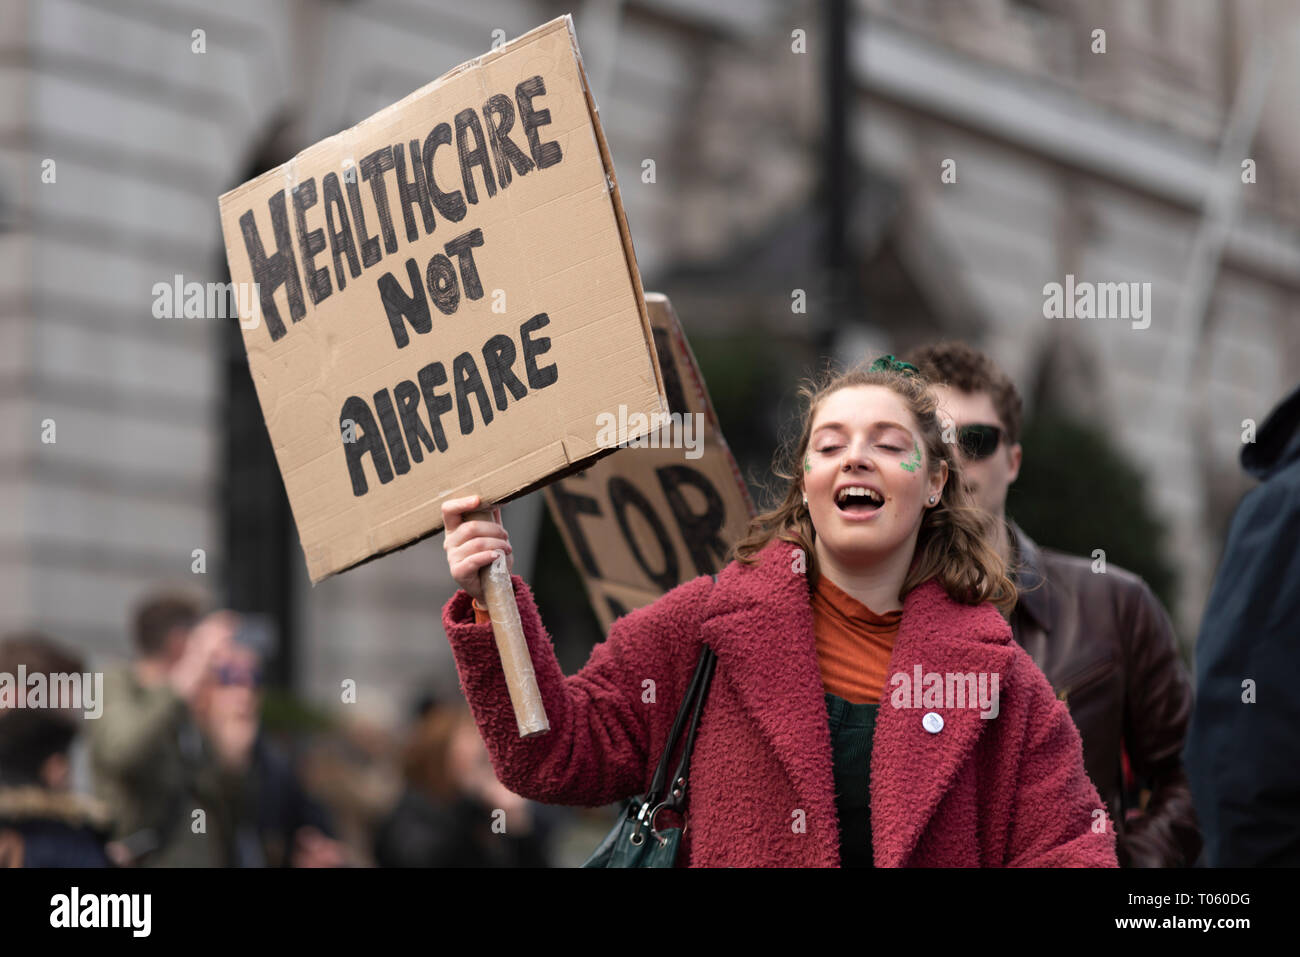 Traditionelle St. Patrick's Day Parade durch London, UK. London Irish Abtreibung Rechte Kampagne Weibchen mit Plakat Healthcare nicht airfare Stockfoto